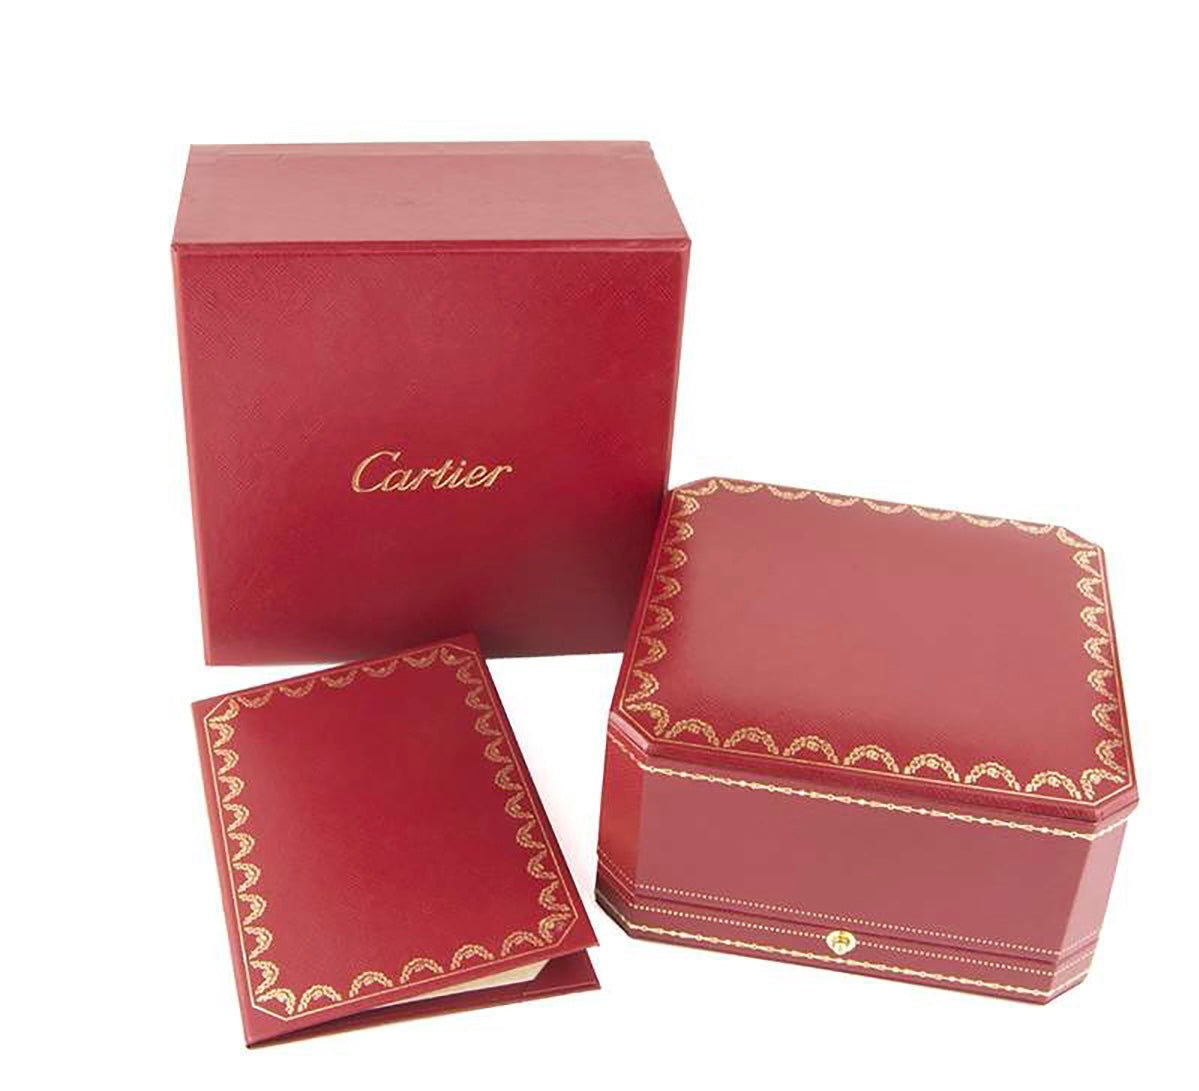 Only 2518.00 usd for Clash de Cartier Bracelet Sz 18 Small Model